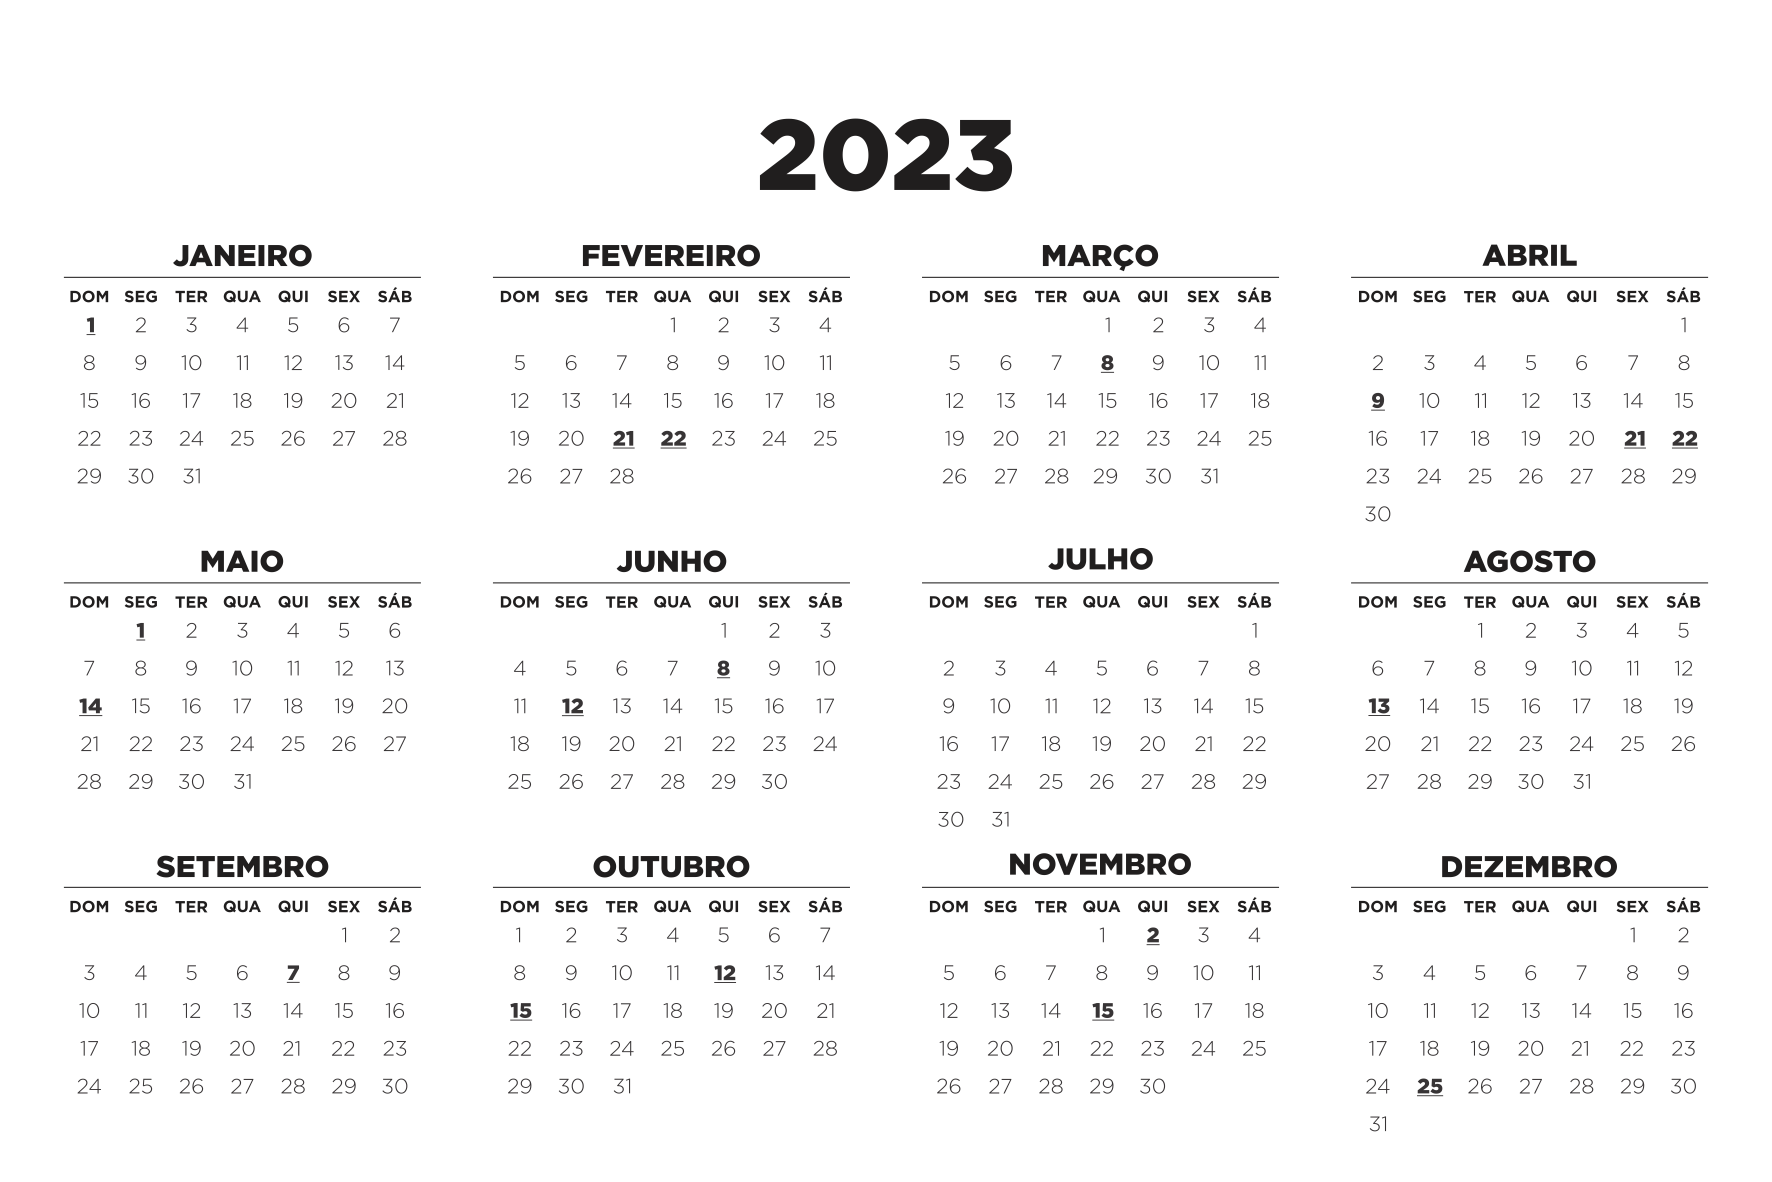 Da colina kokuriko - 2023 calendário de dezembro em 2023